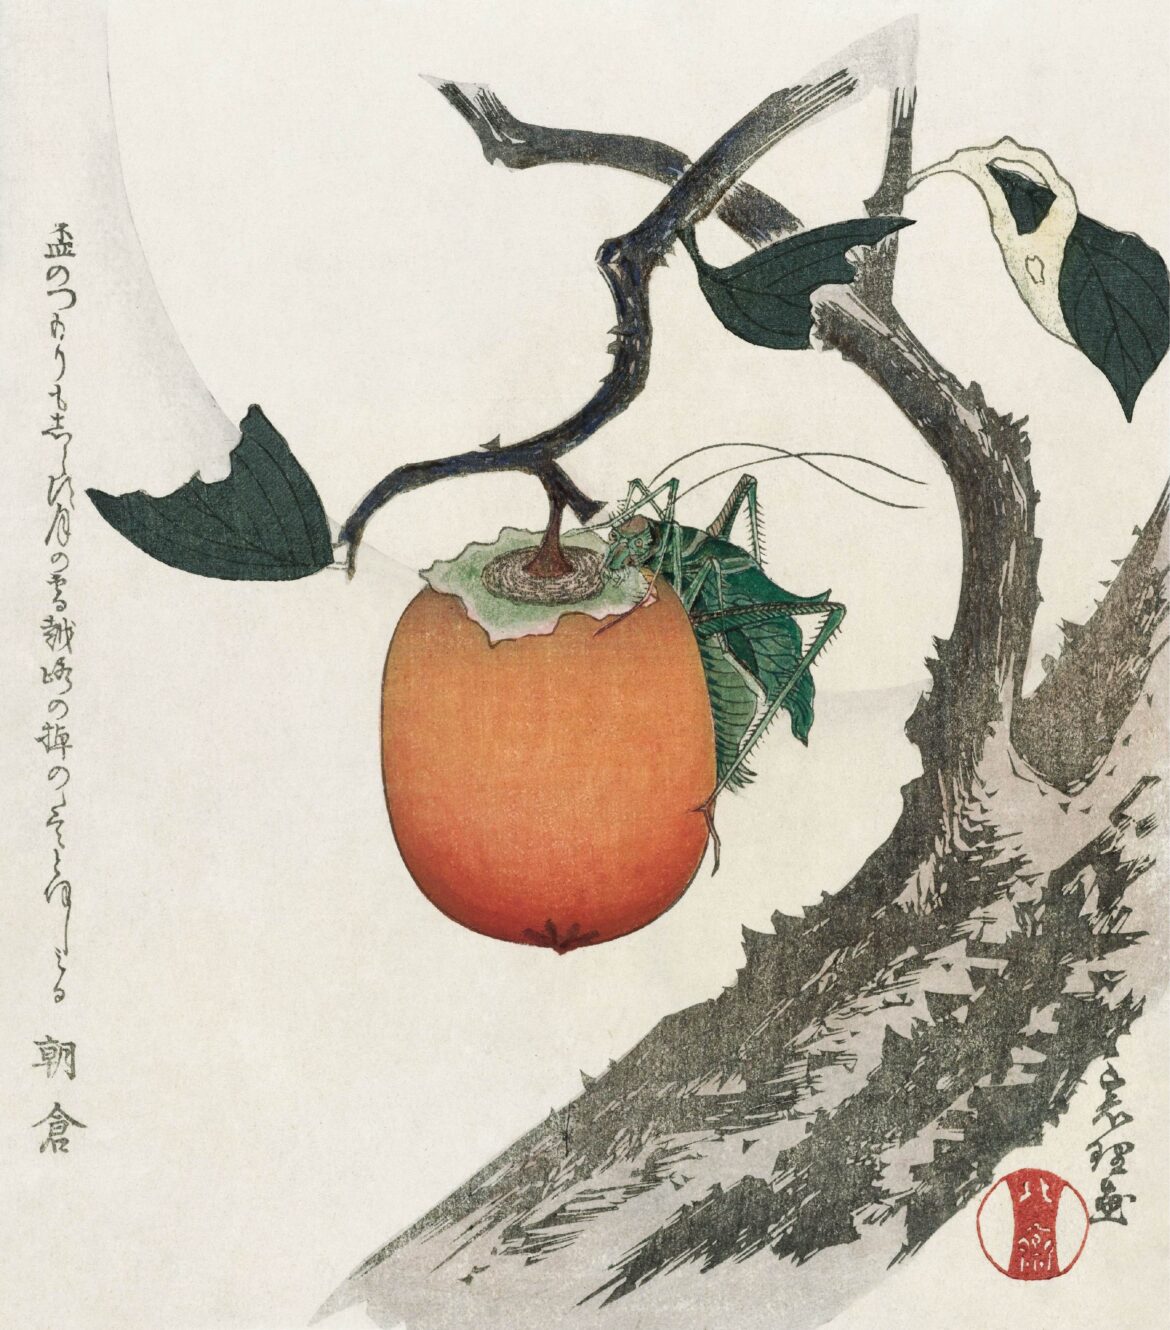 【無料壁紙】葛飾 北斎「柿の実とバッタ (1890-1900頃)」 / Katsushika Hokusai_Kakivrucht met sprinkhaan (ca. 1890–1900)